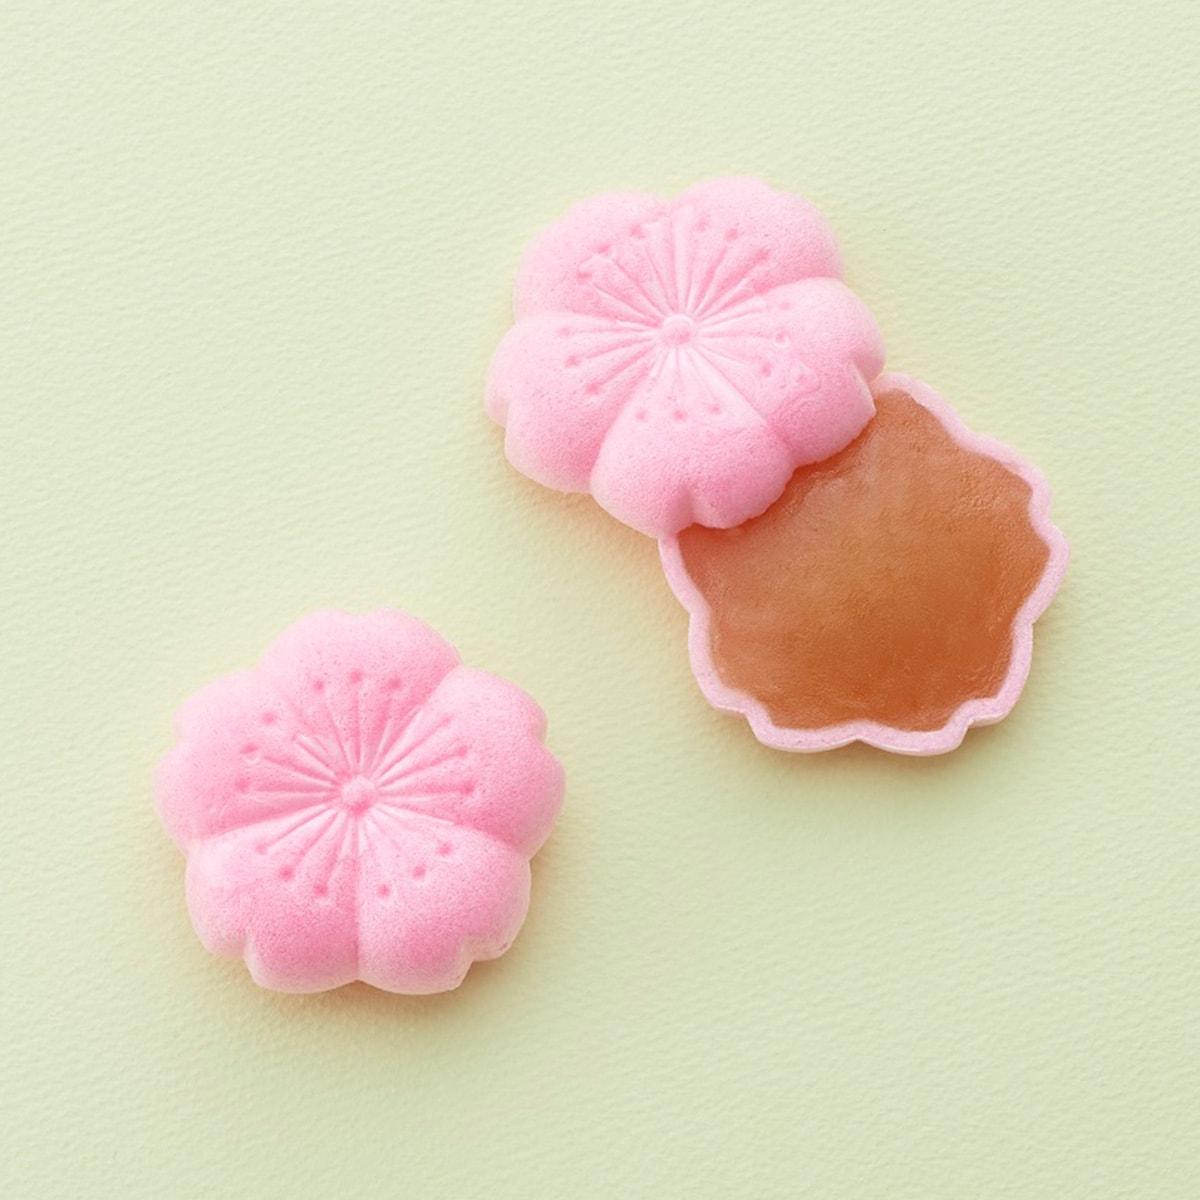 〈とらや〉で感じる春の味。雛まつりや桜、いちごをテーマにした和菓子が勢揃い - Slide:4